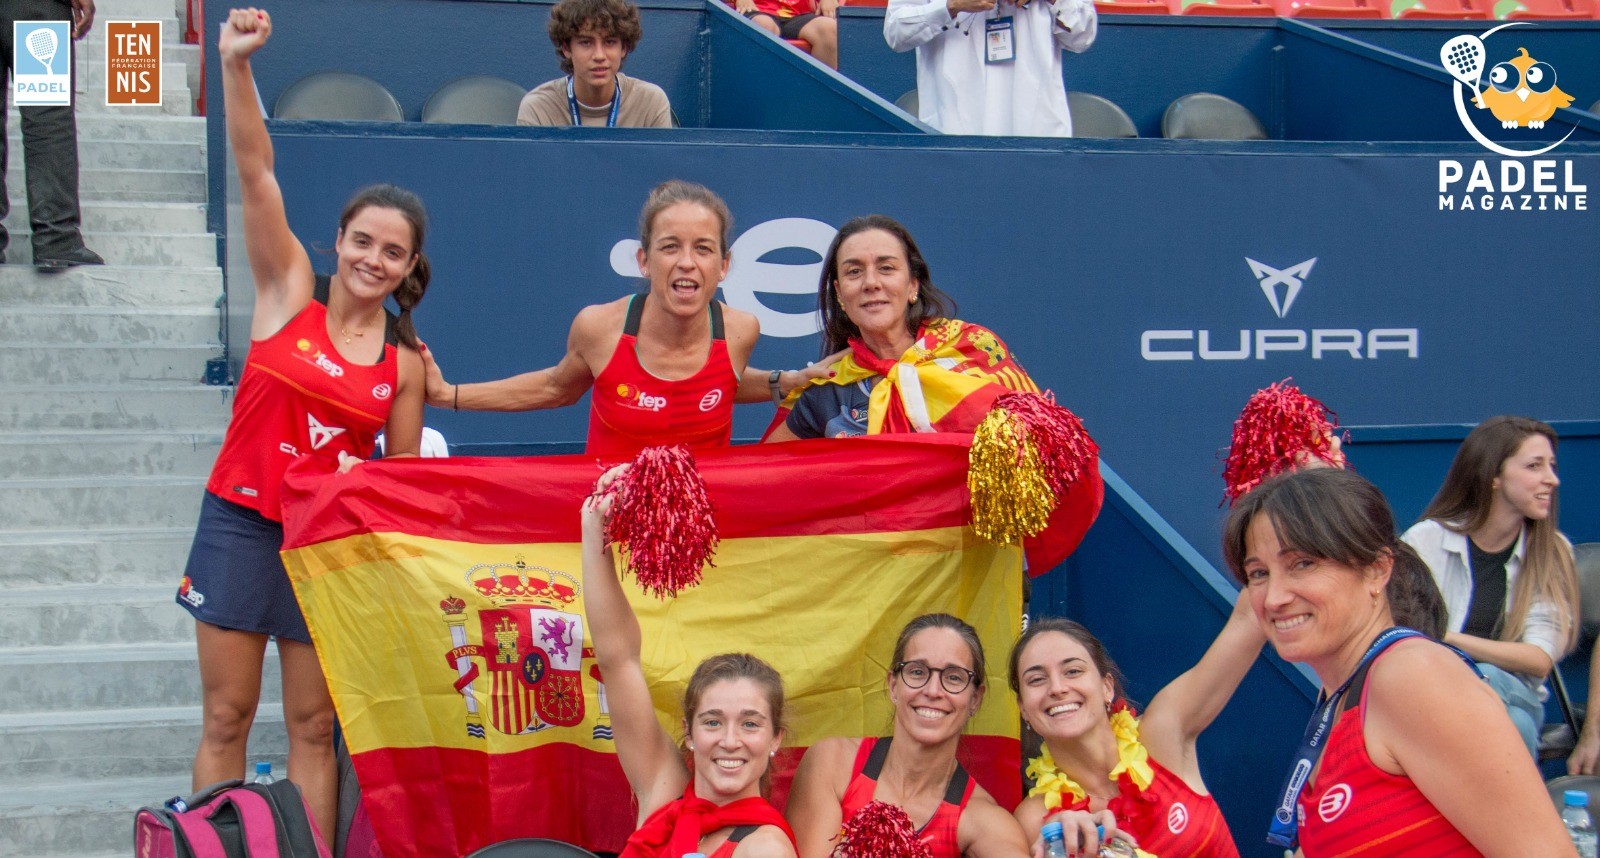 Le padel "Syö" tennistä Espanjassa